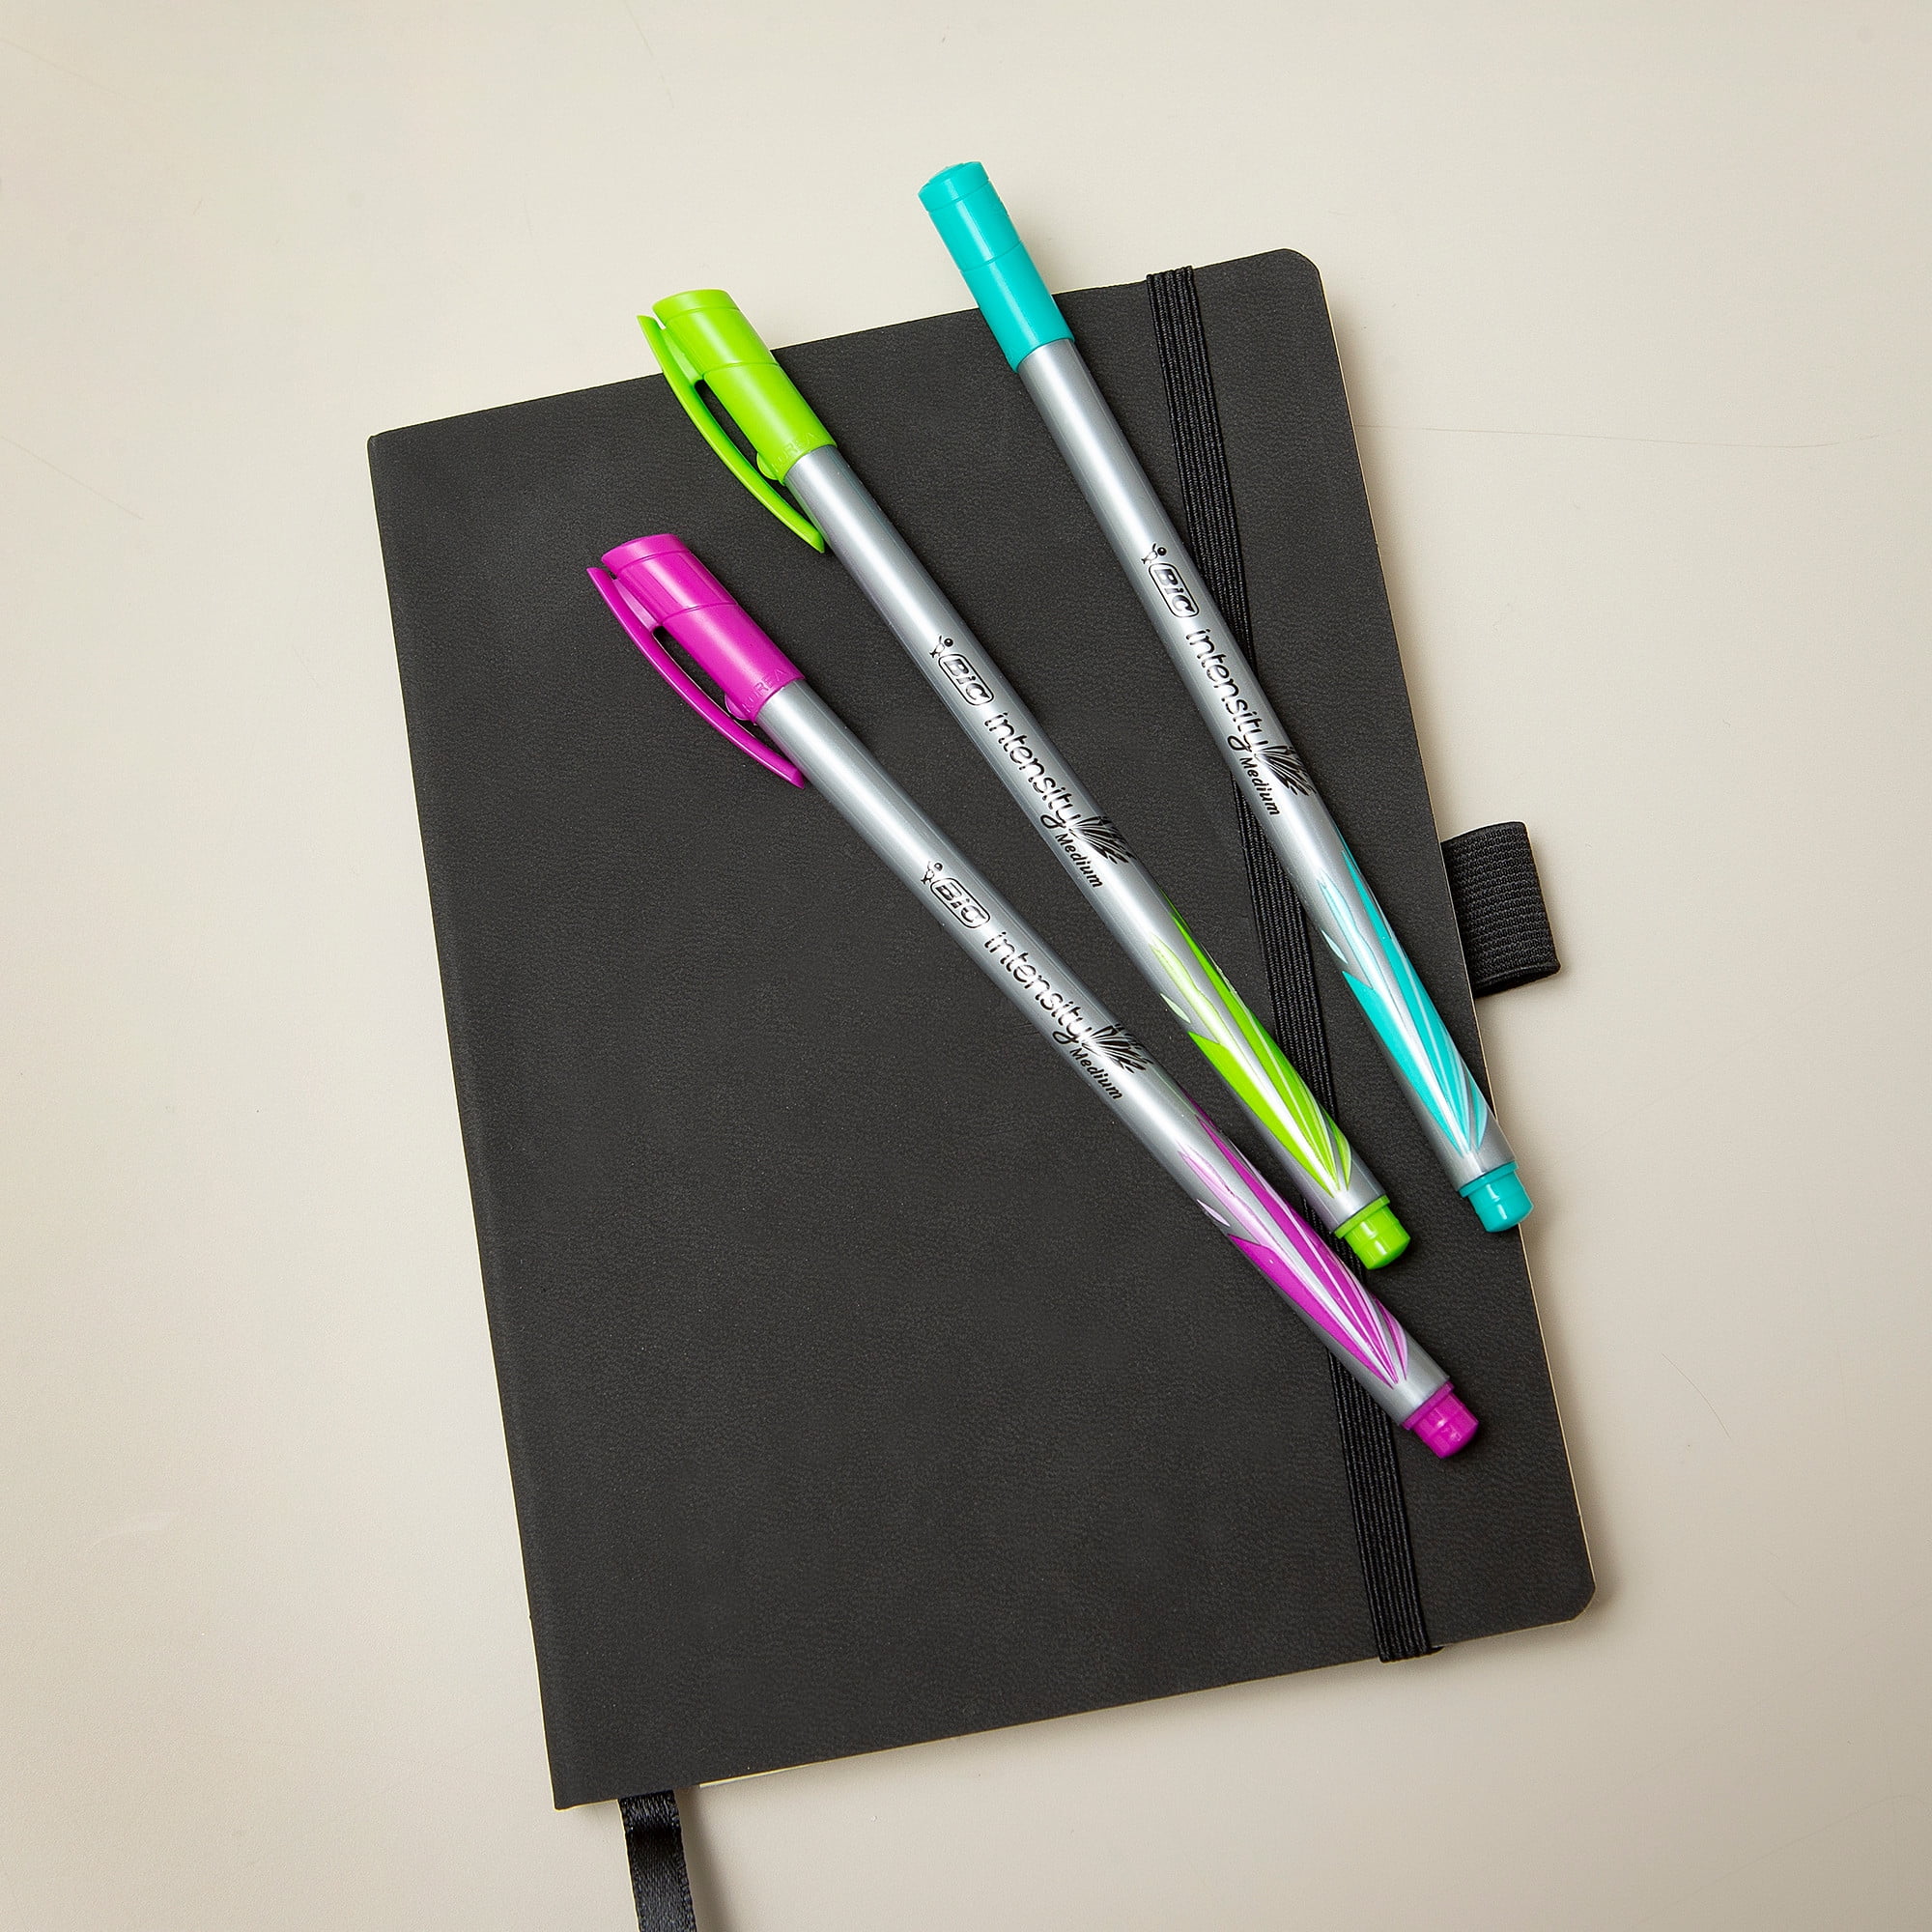 BIC® Intensity® Color Change Fineliner Pens, 6 ct - Fred Meyer